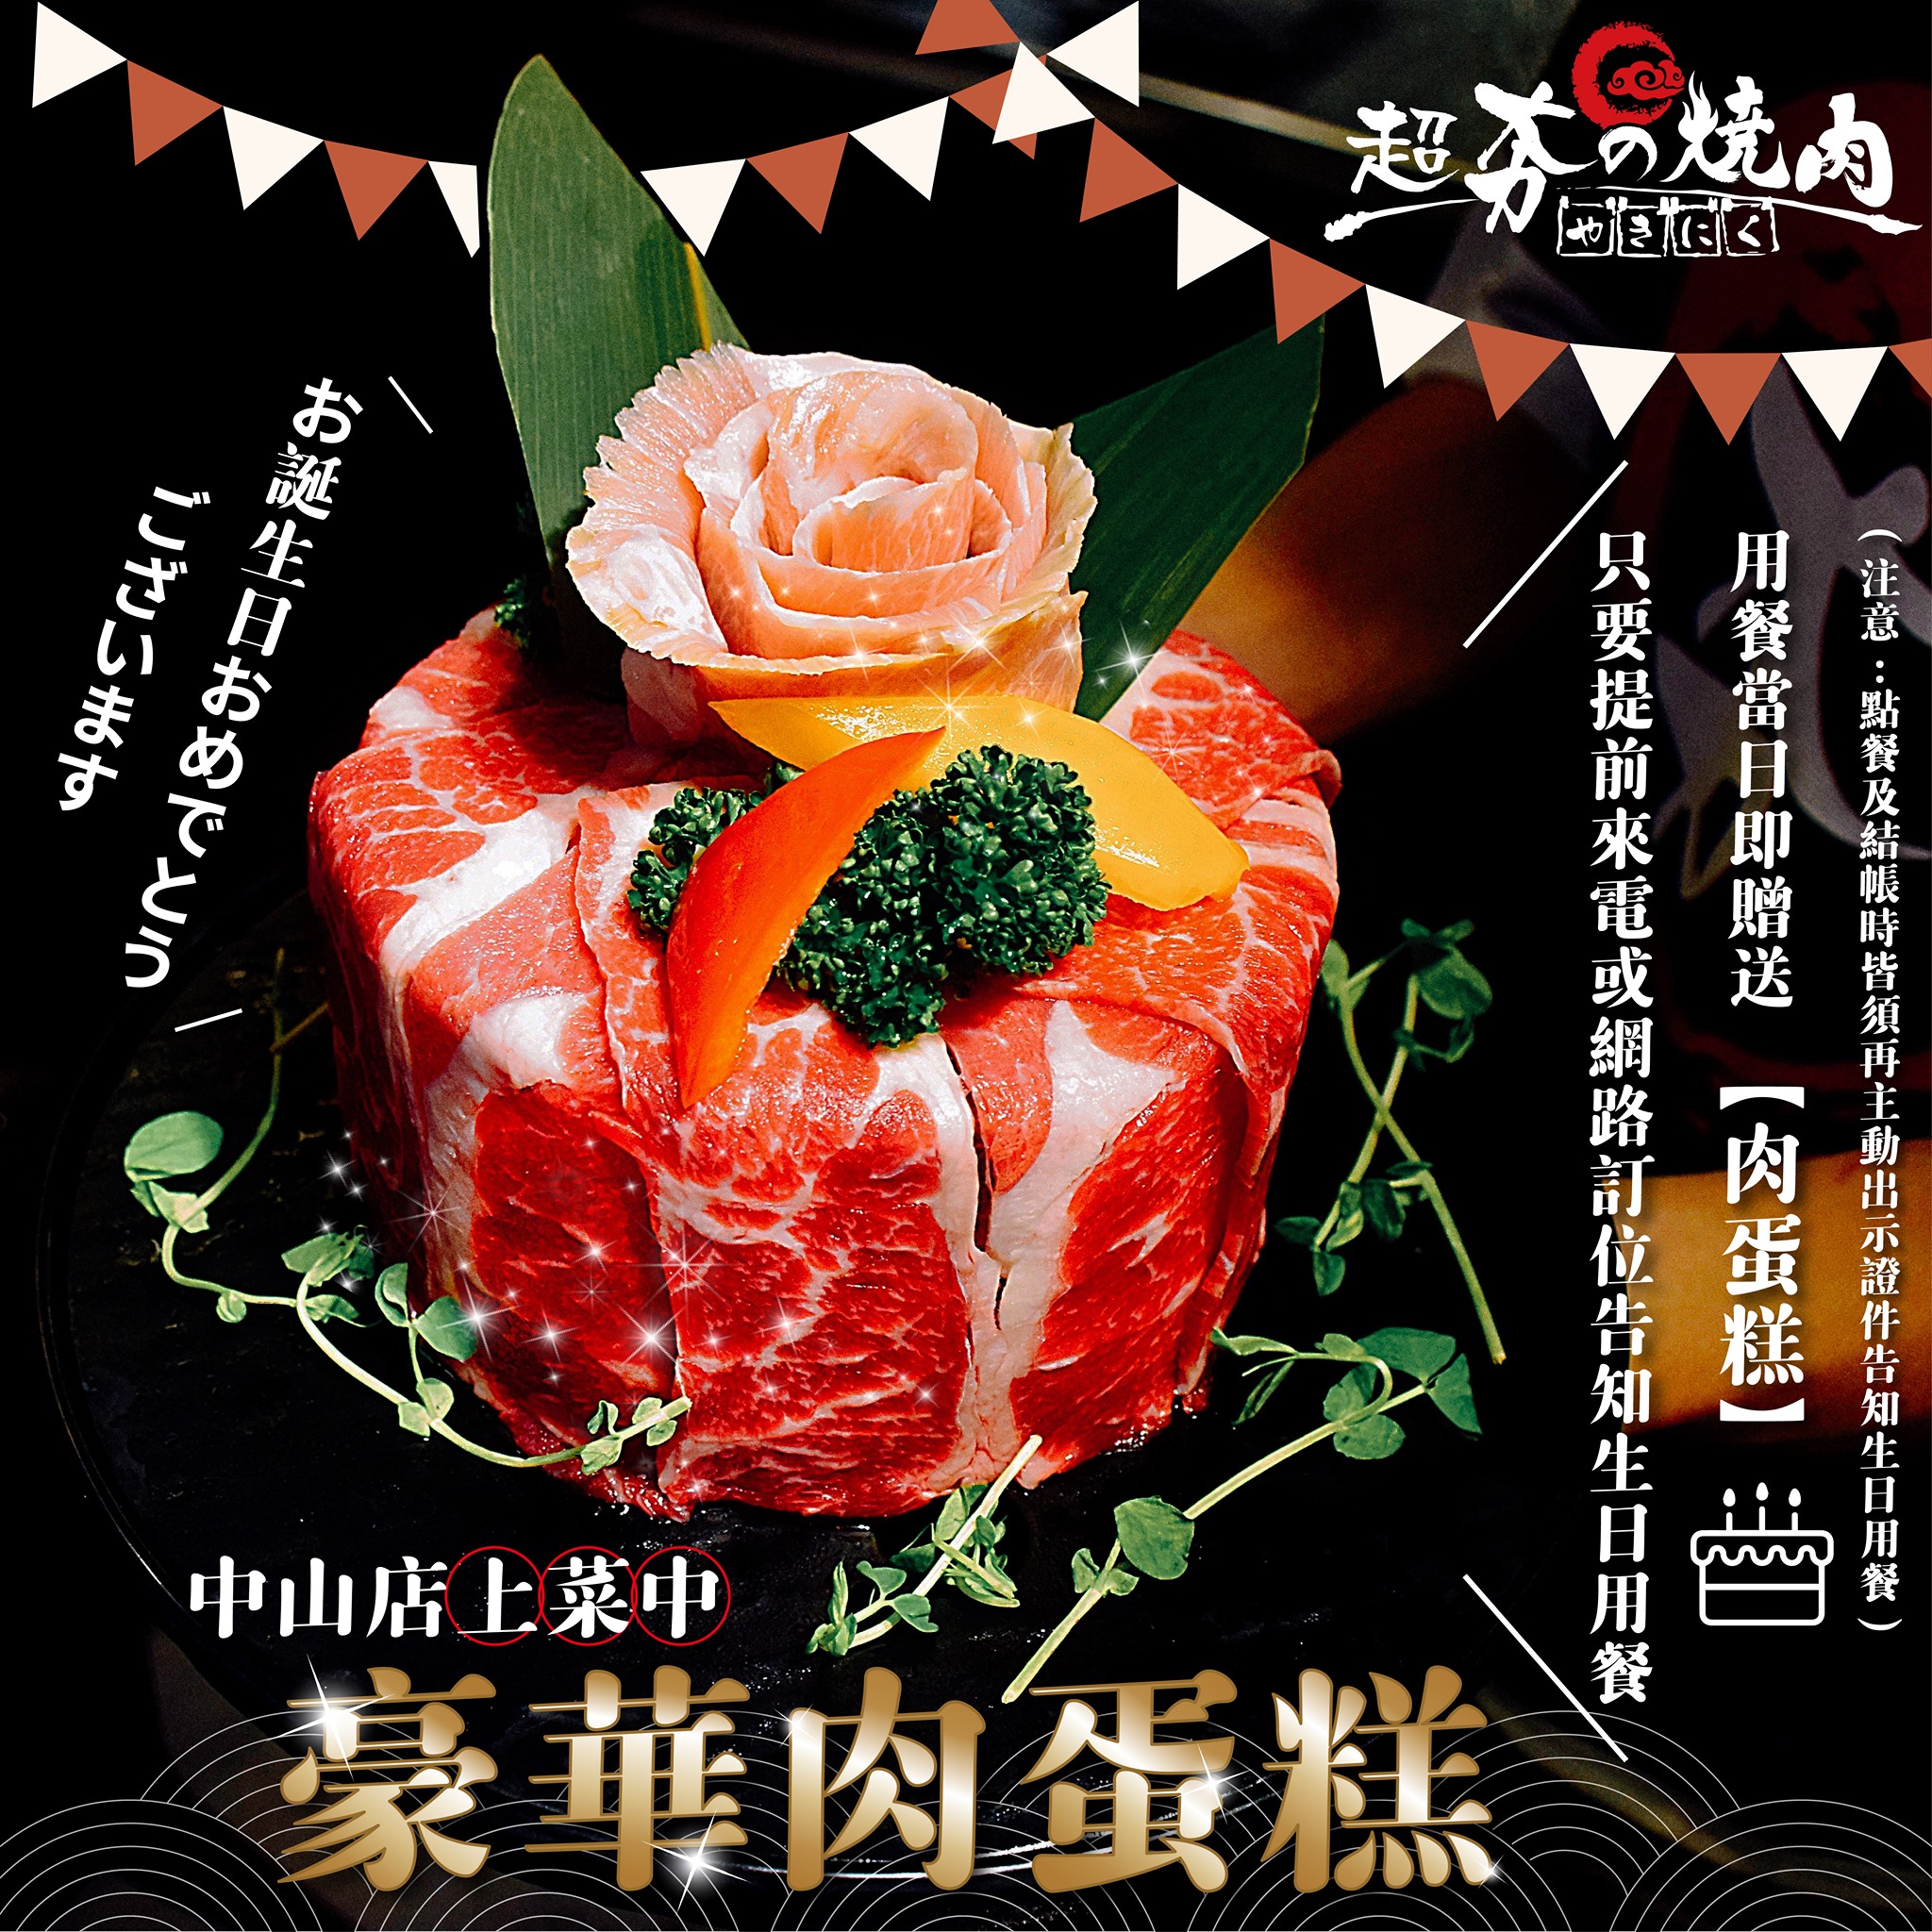 壽星蛋糕,桃園燒肉,海鮮寶箱,燒肉吃到飽,牛舌,肉肉蛋糕,芭比肉盤,超夯の燒肉